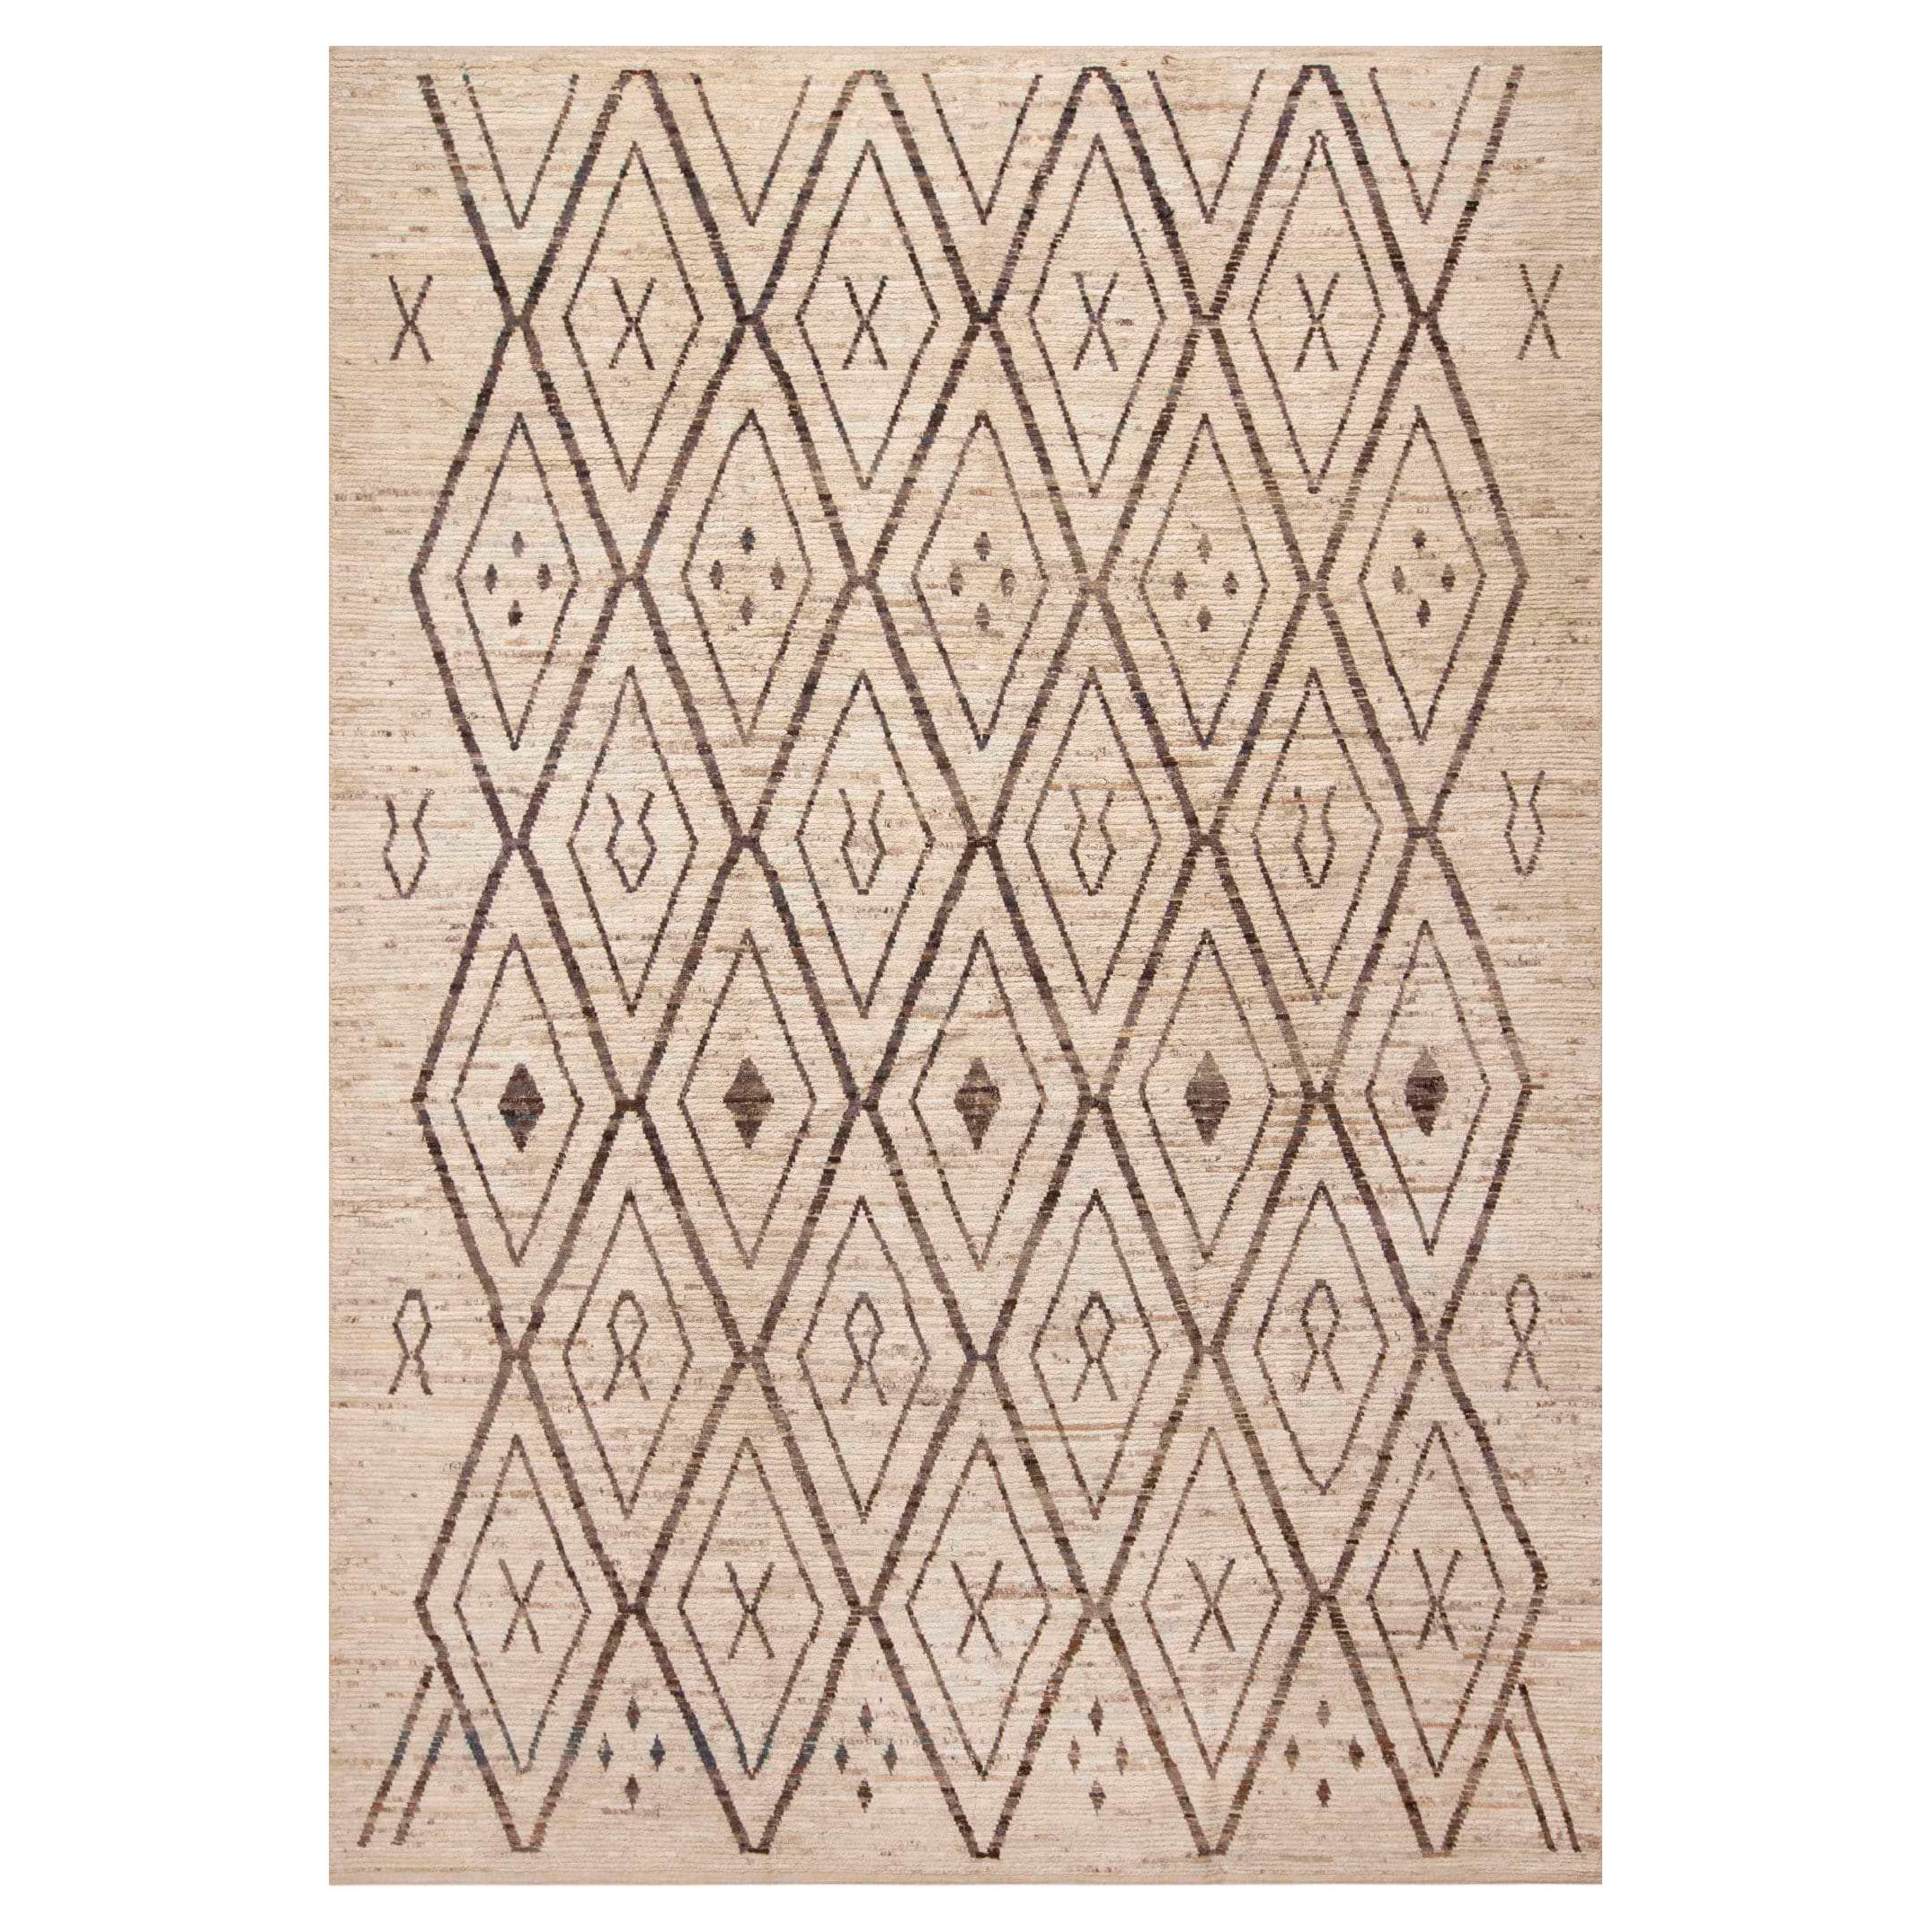 Nazmiyal Kollektion Stammeskunst Geometrischer Berber Beni Ourain Design Teppich 10' x 14'2"